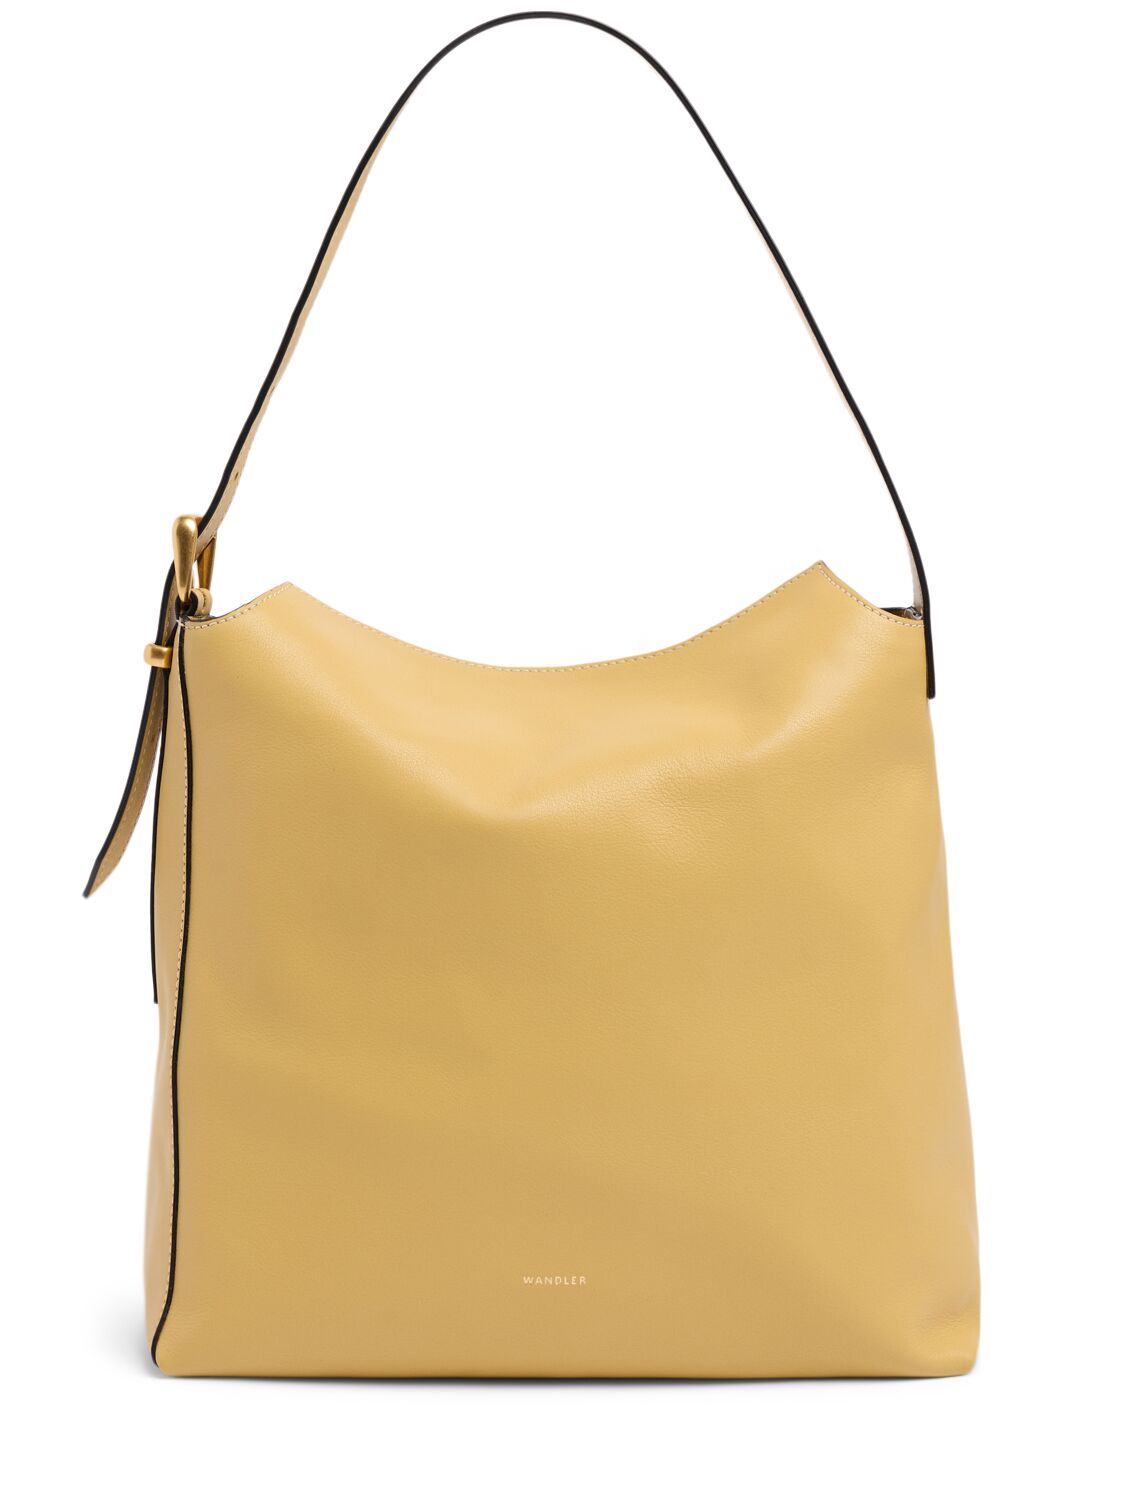 Marli Leather Shoulder Bag